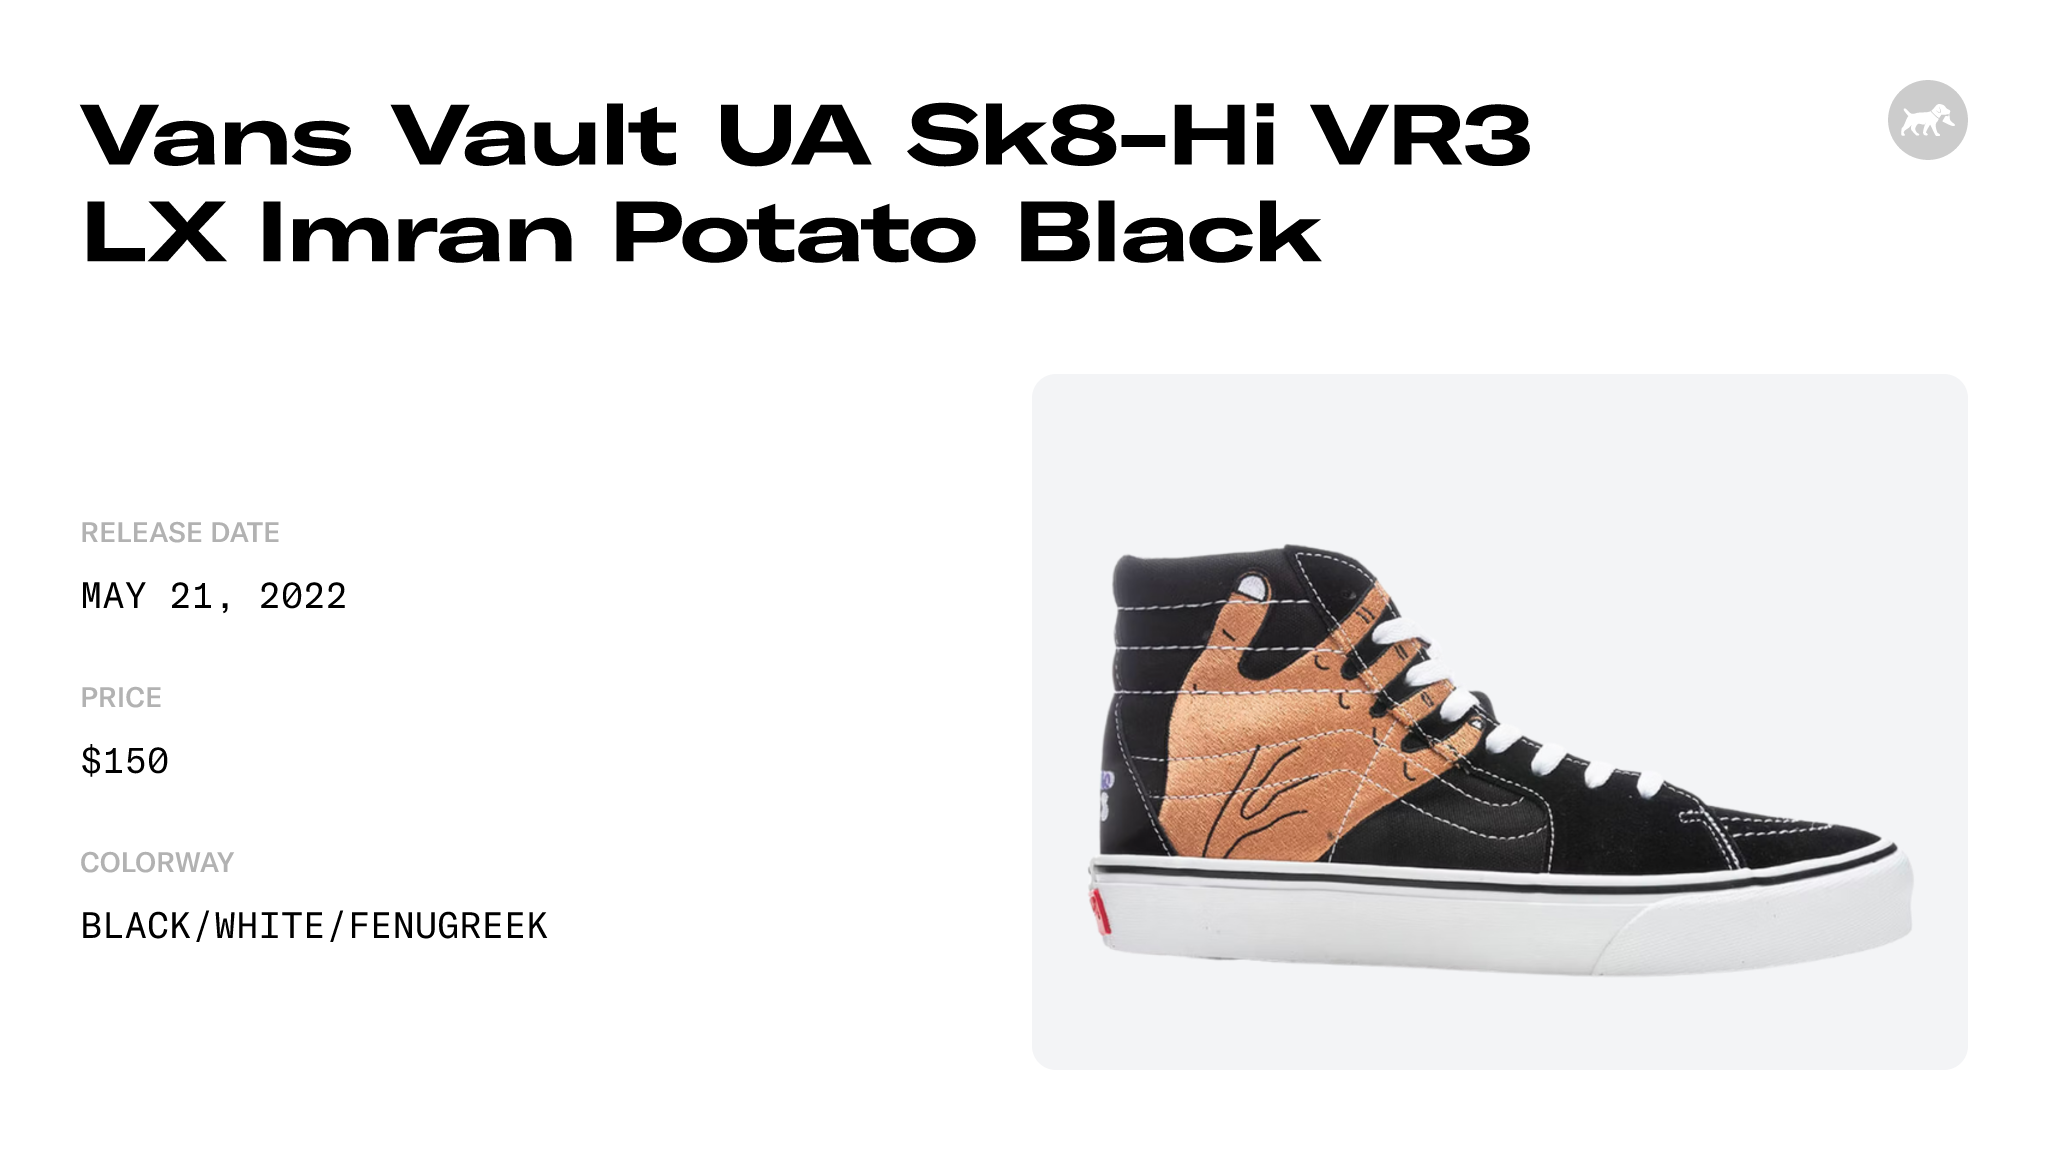 Vans Vault UA Sk8-Hi VR3 LX Imran Potato Black